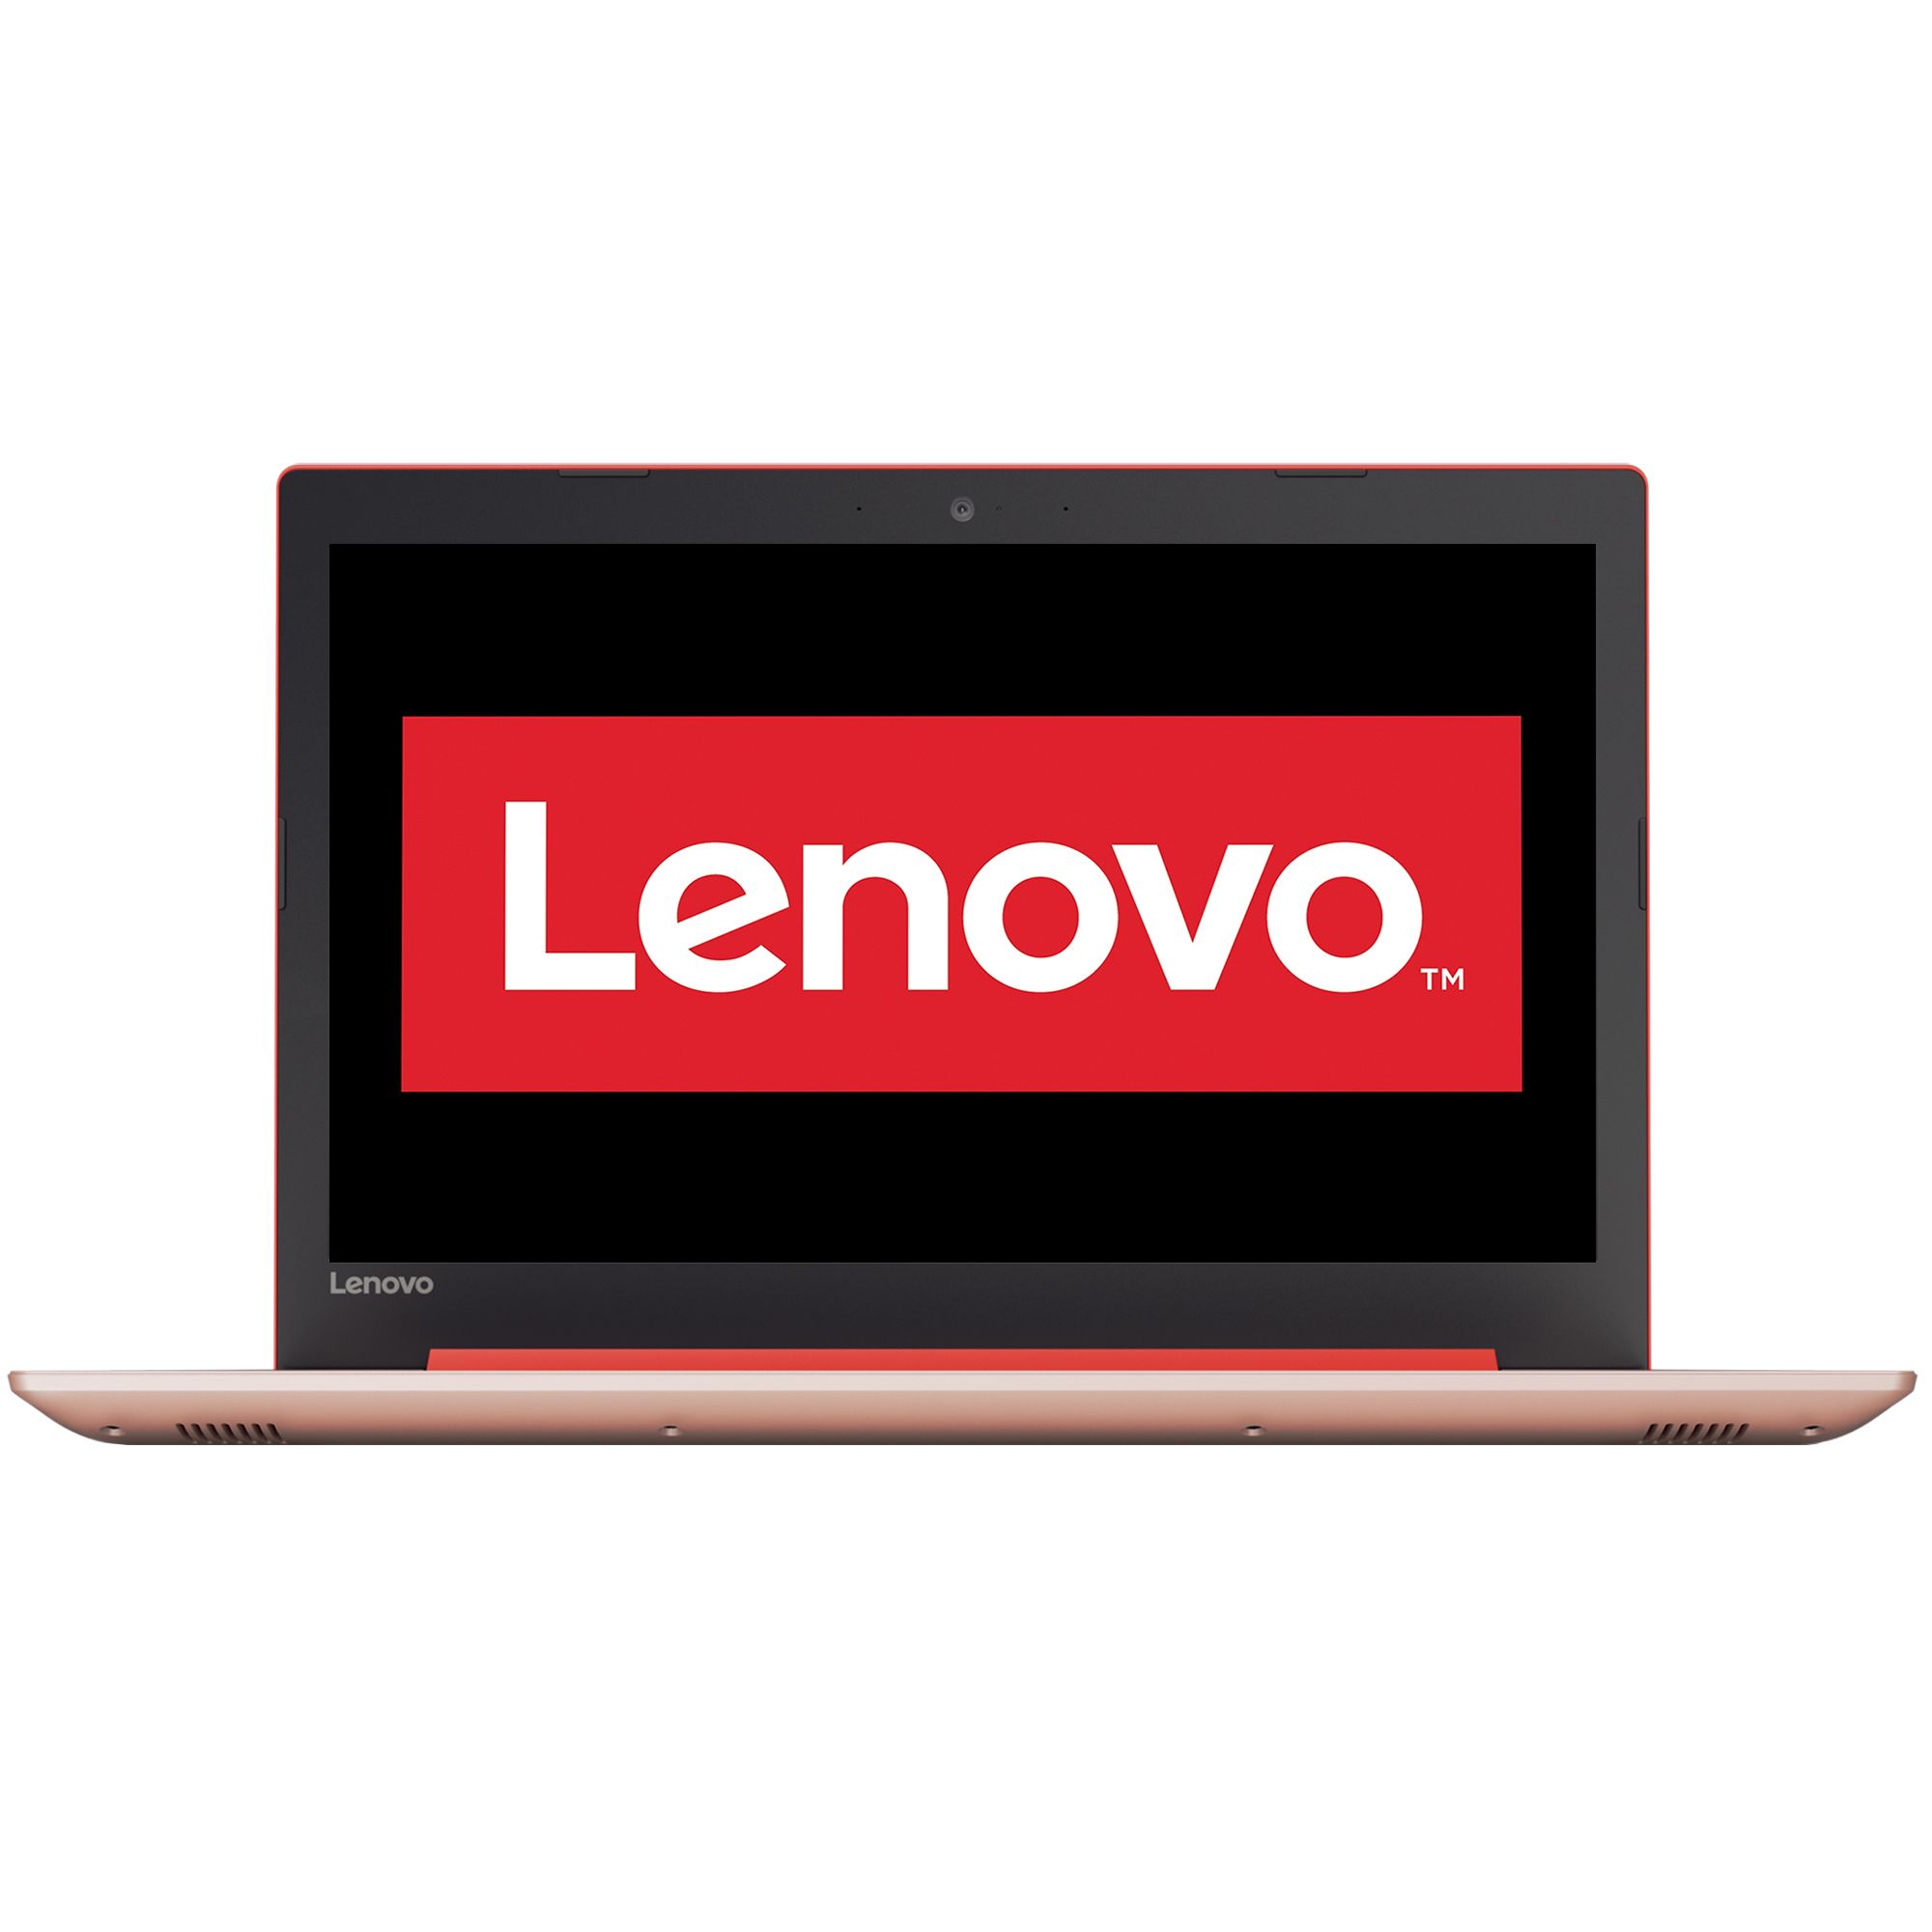 Notebook Lenovo IdeaPad 320 15.6 HD AMD A6-9220 RAM 4GB HDD 500GB FreeDOS Rosu